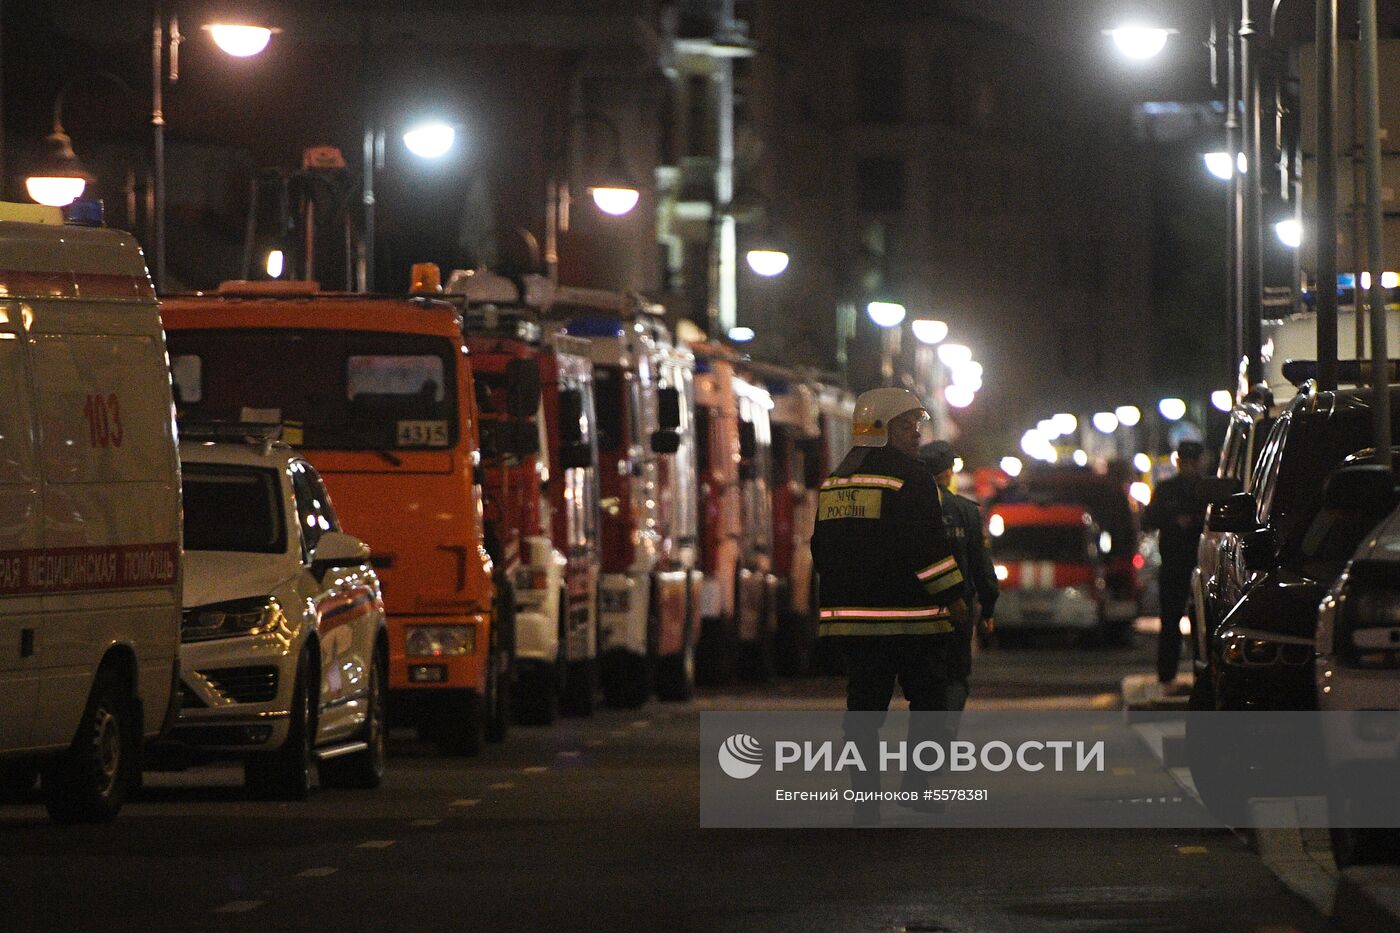 Пожар произошел в жилом доме на Пятницкой улице в Москве